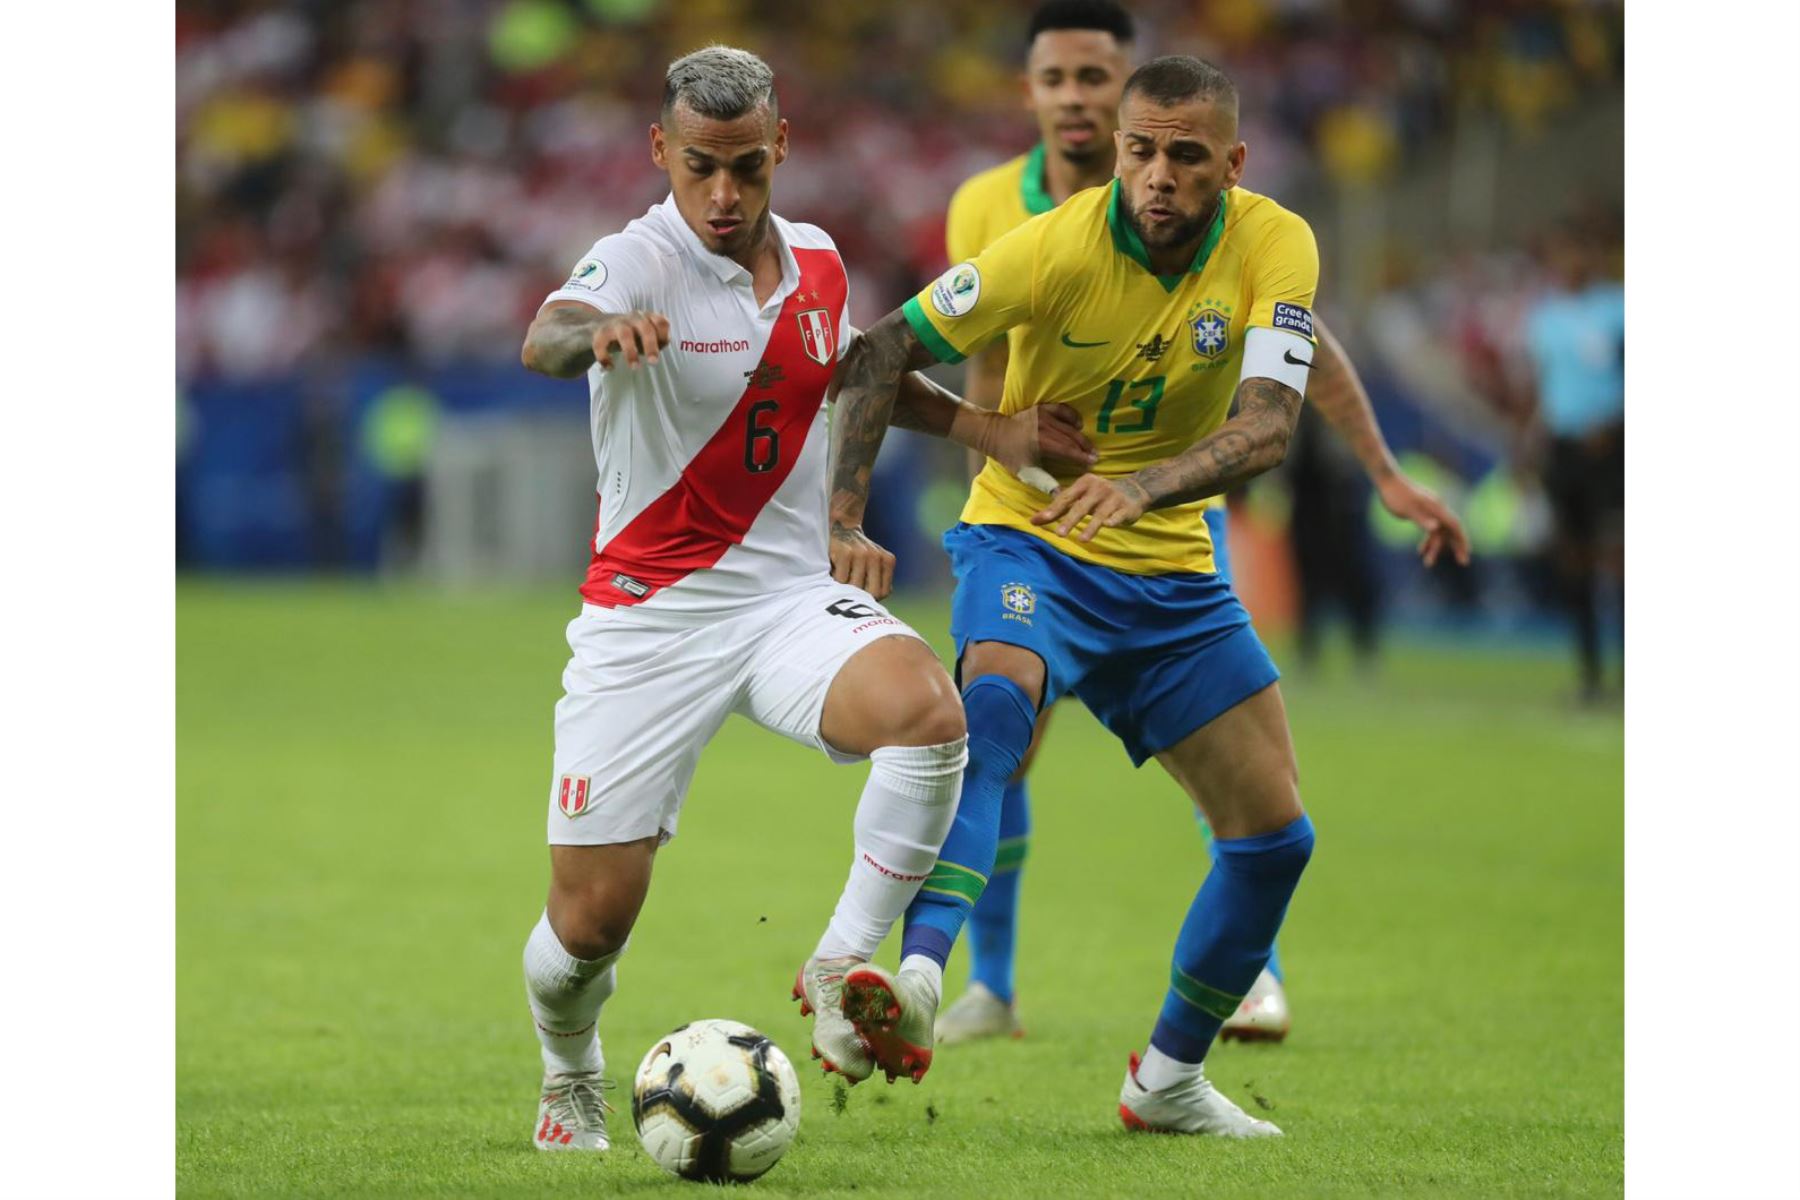 El peruano Miguel Trauco  reacciona ante jugador brasileño en el  torneo de fútbol de Copa América contra Brasil.
Foto: FPF